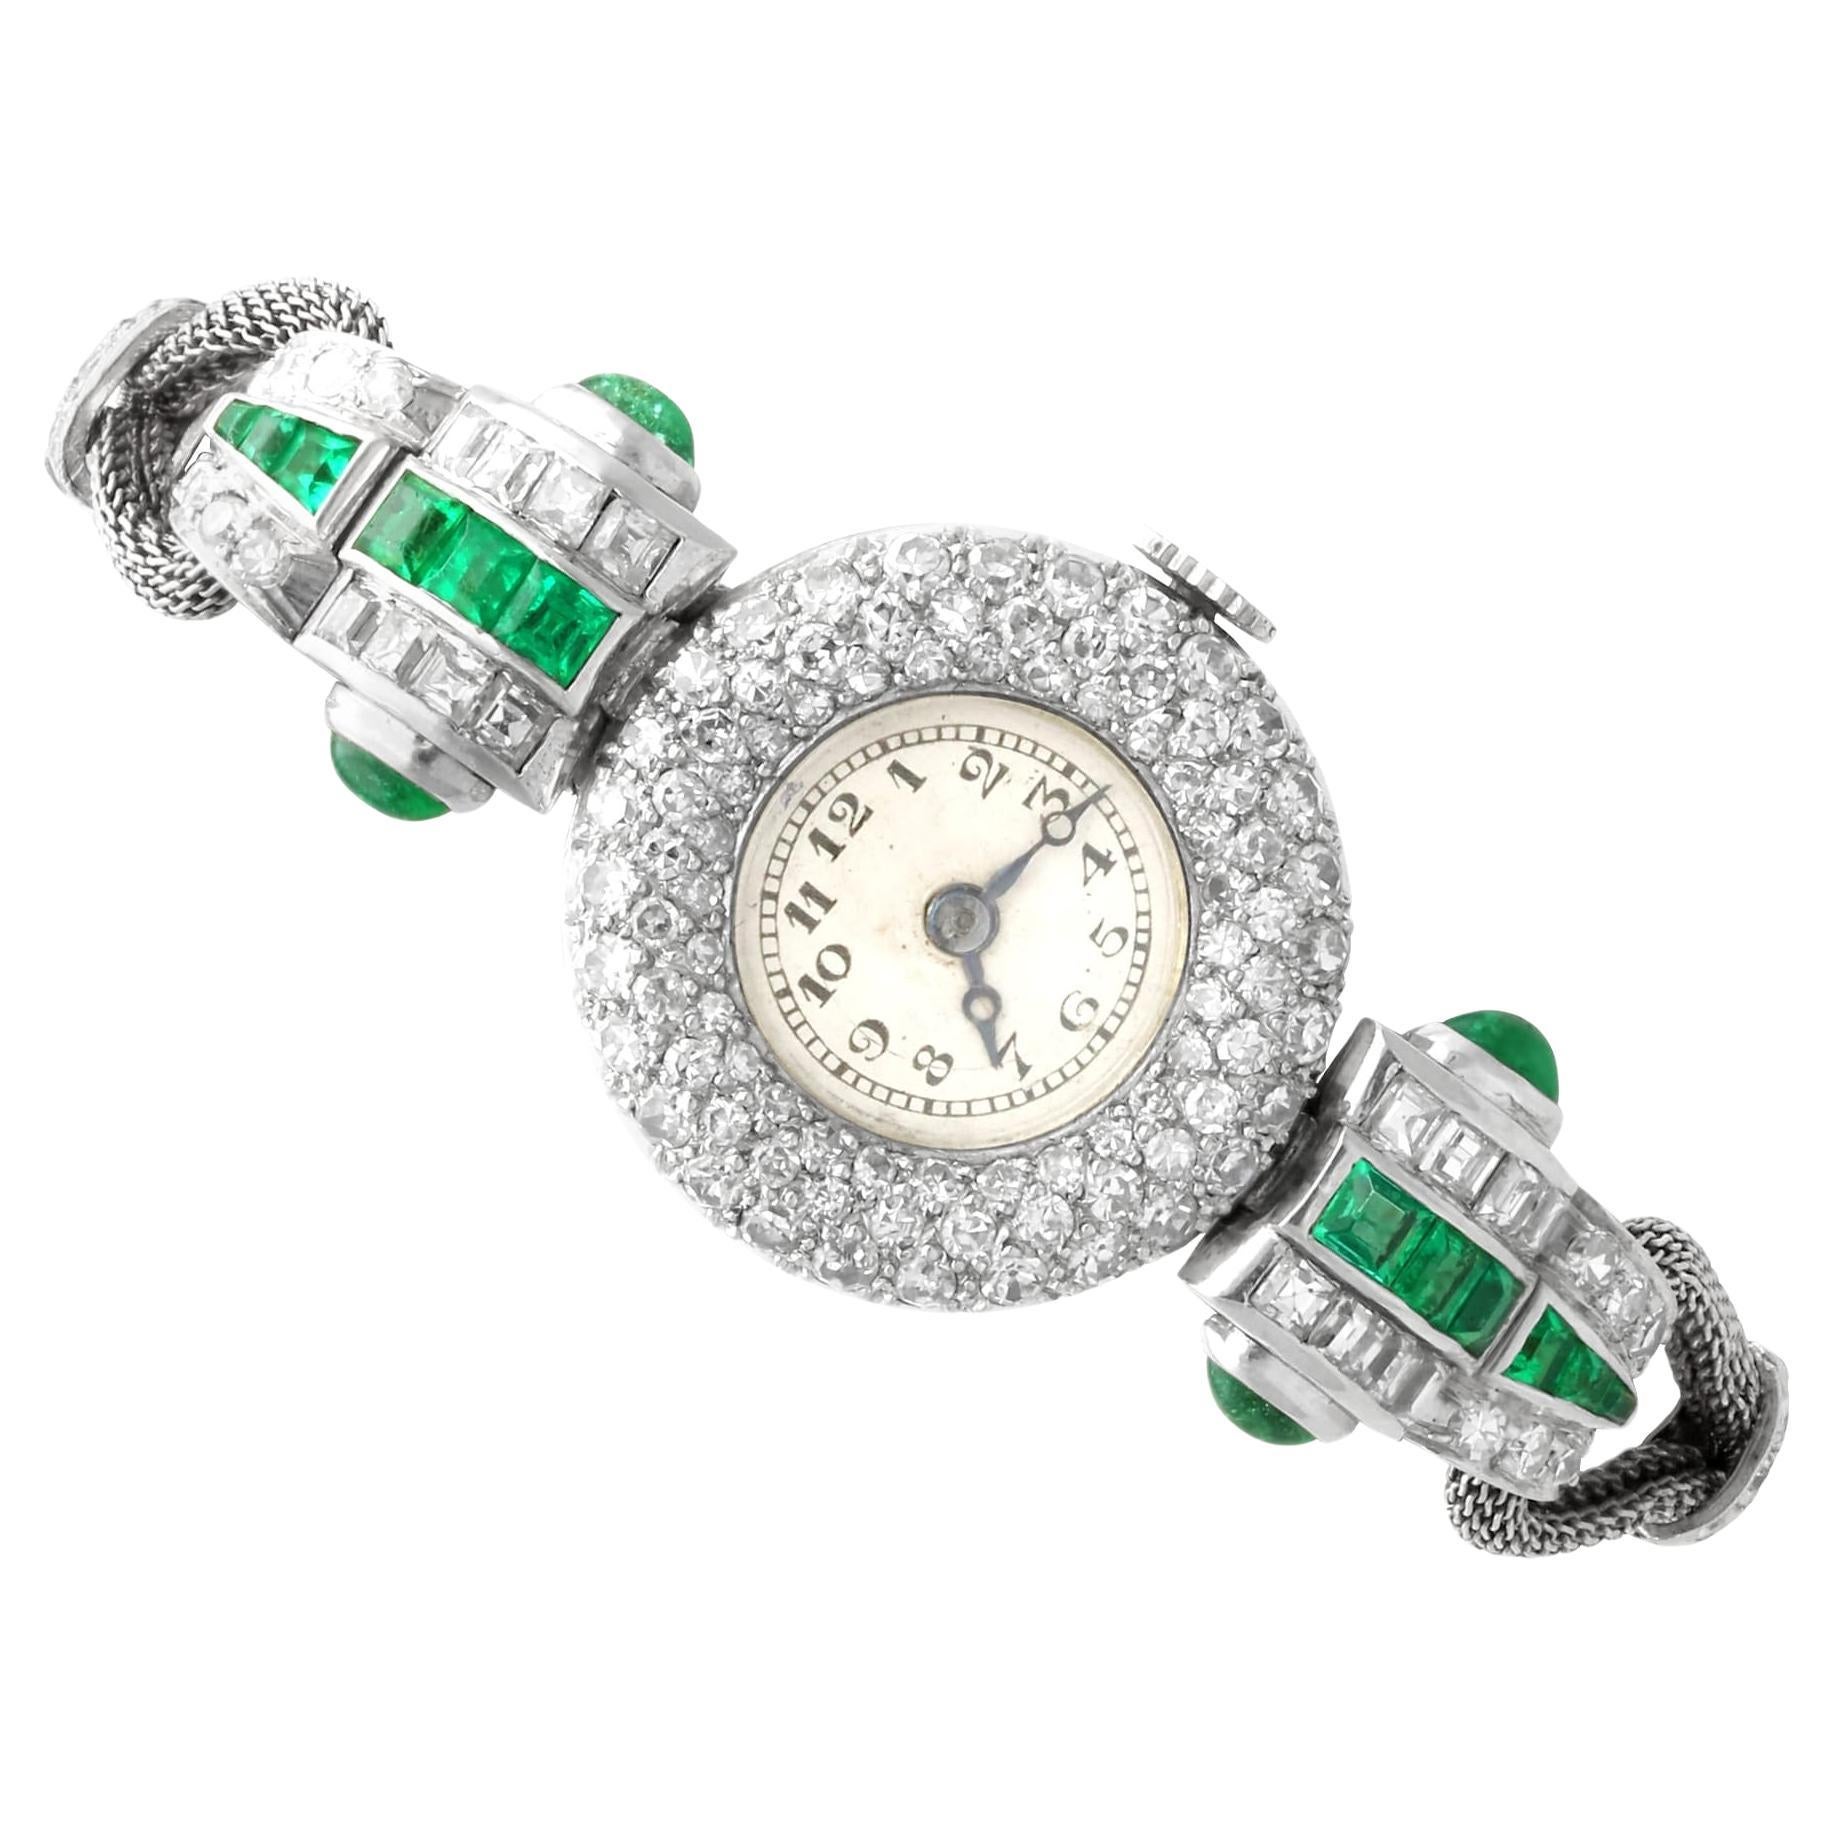 Antique Art Deco 1.25 Carat Emerald 2.02 Carats Diamond Watch in Platinum